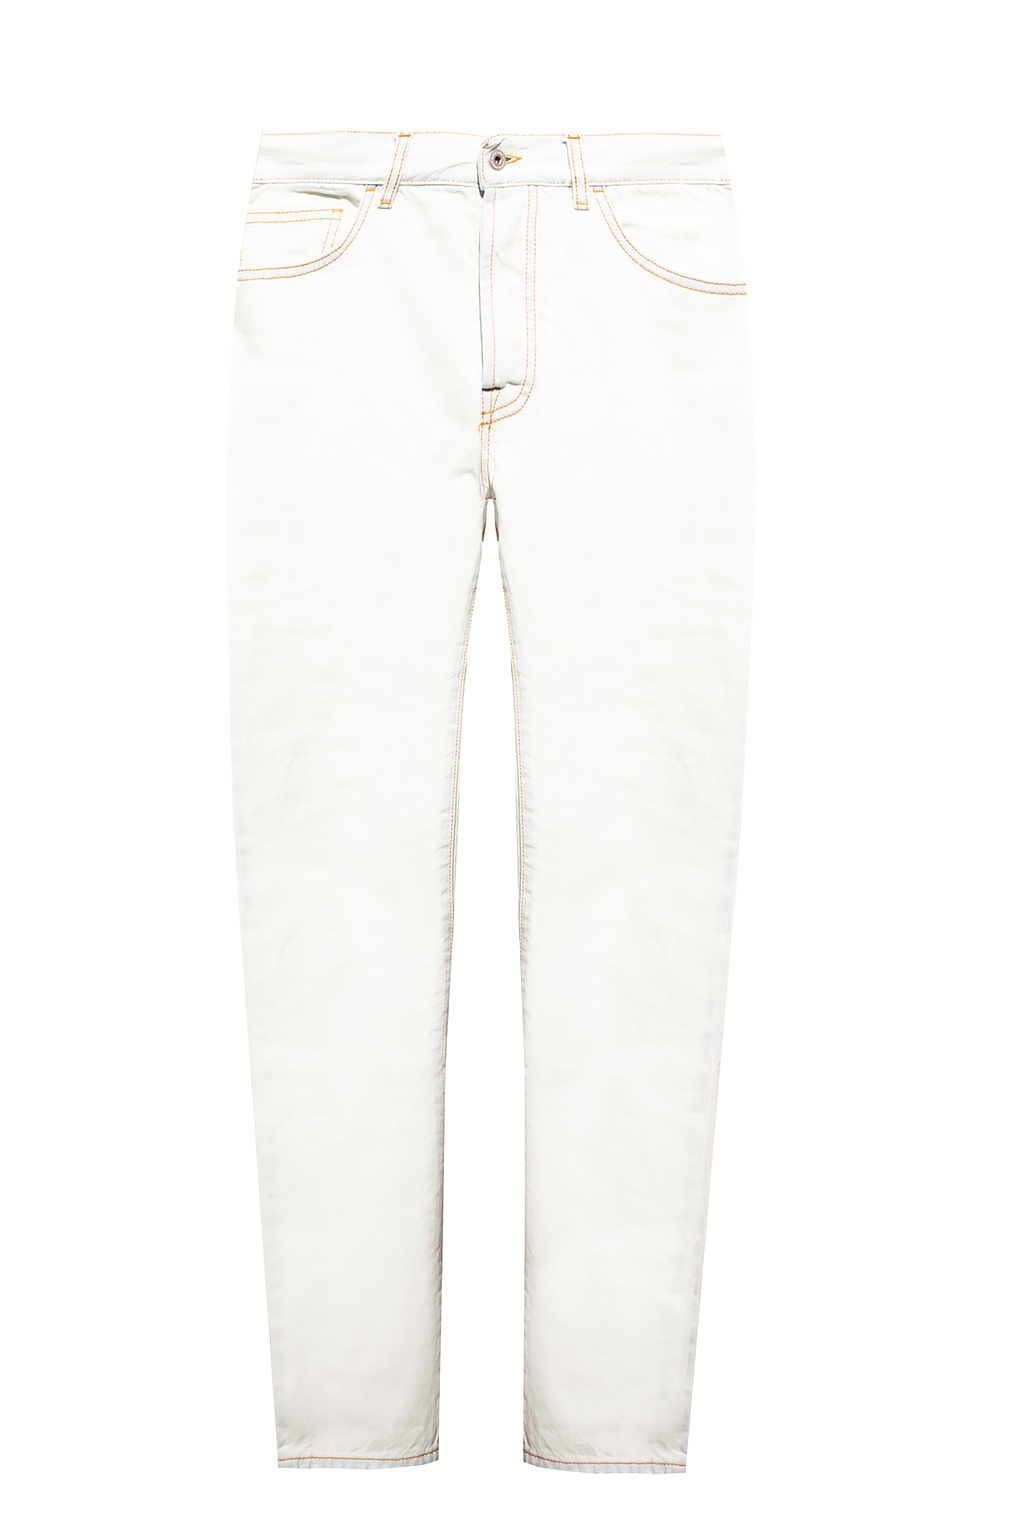 Marcelo Burlon Cotton Stretch Five-Pocket Pants